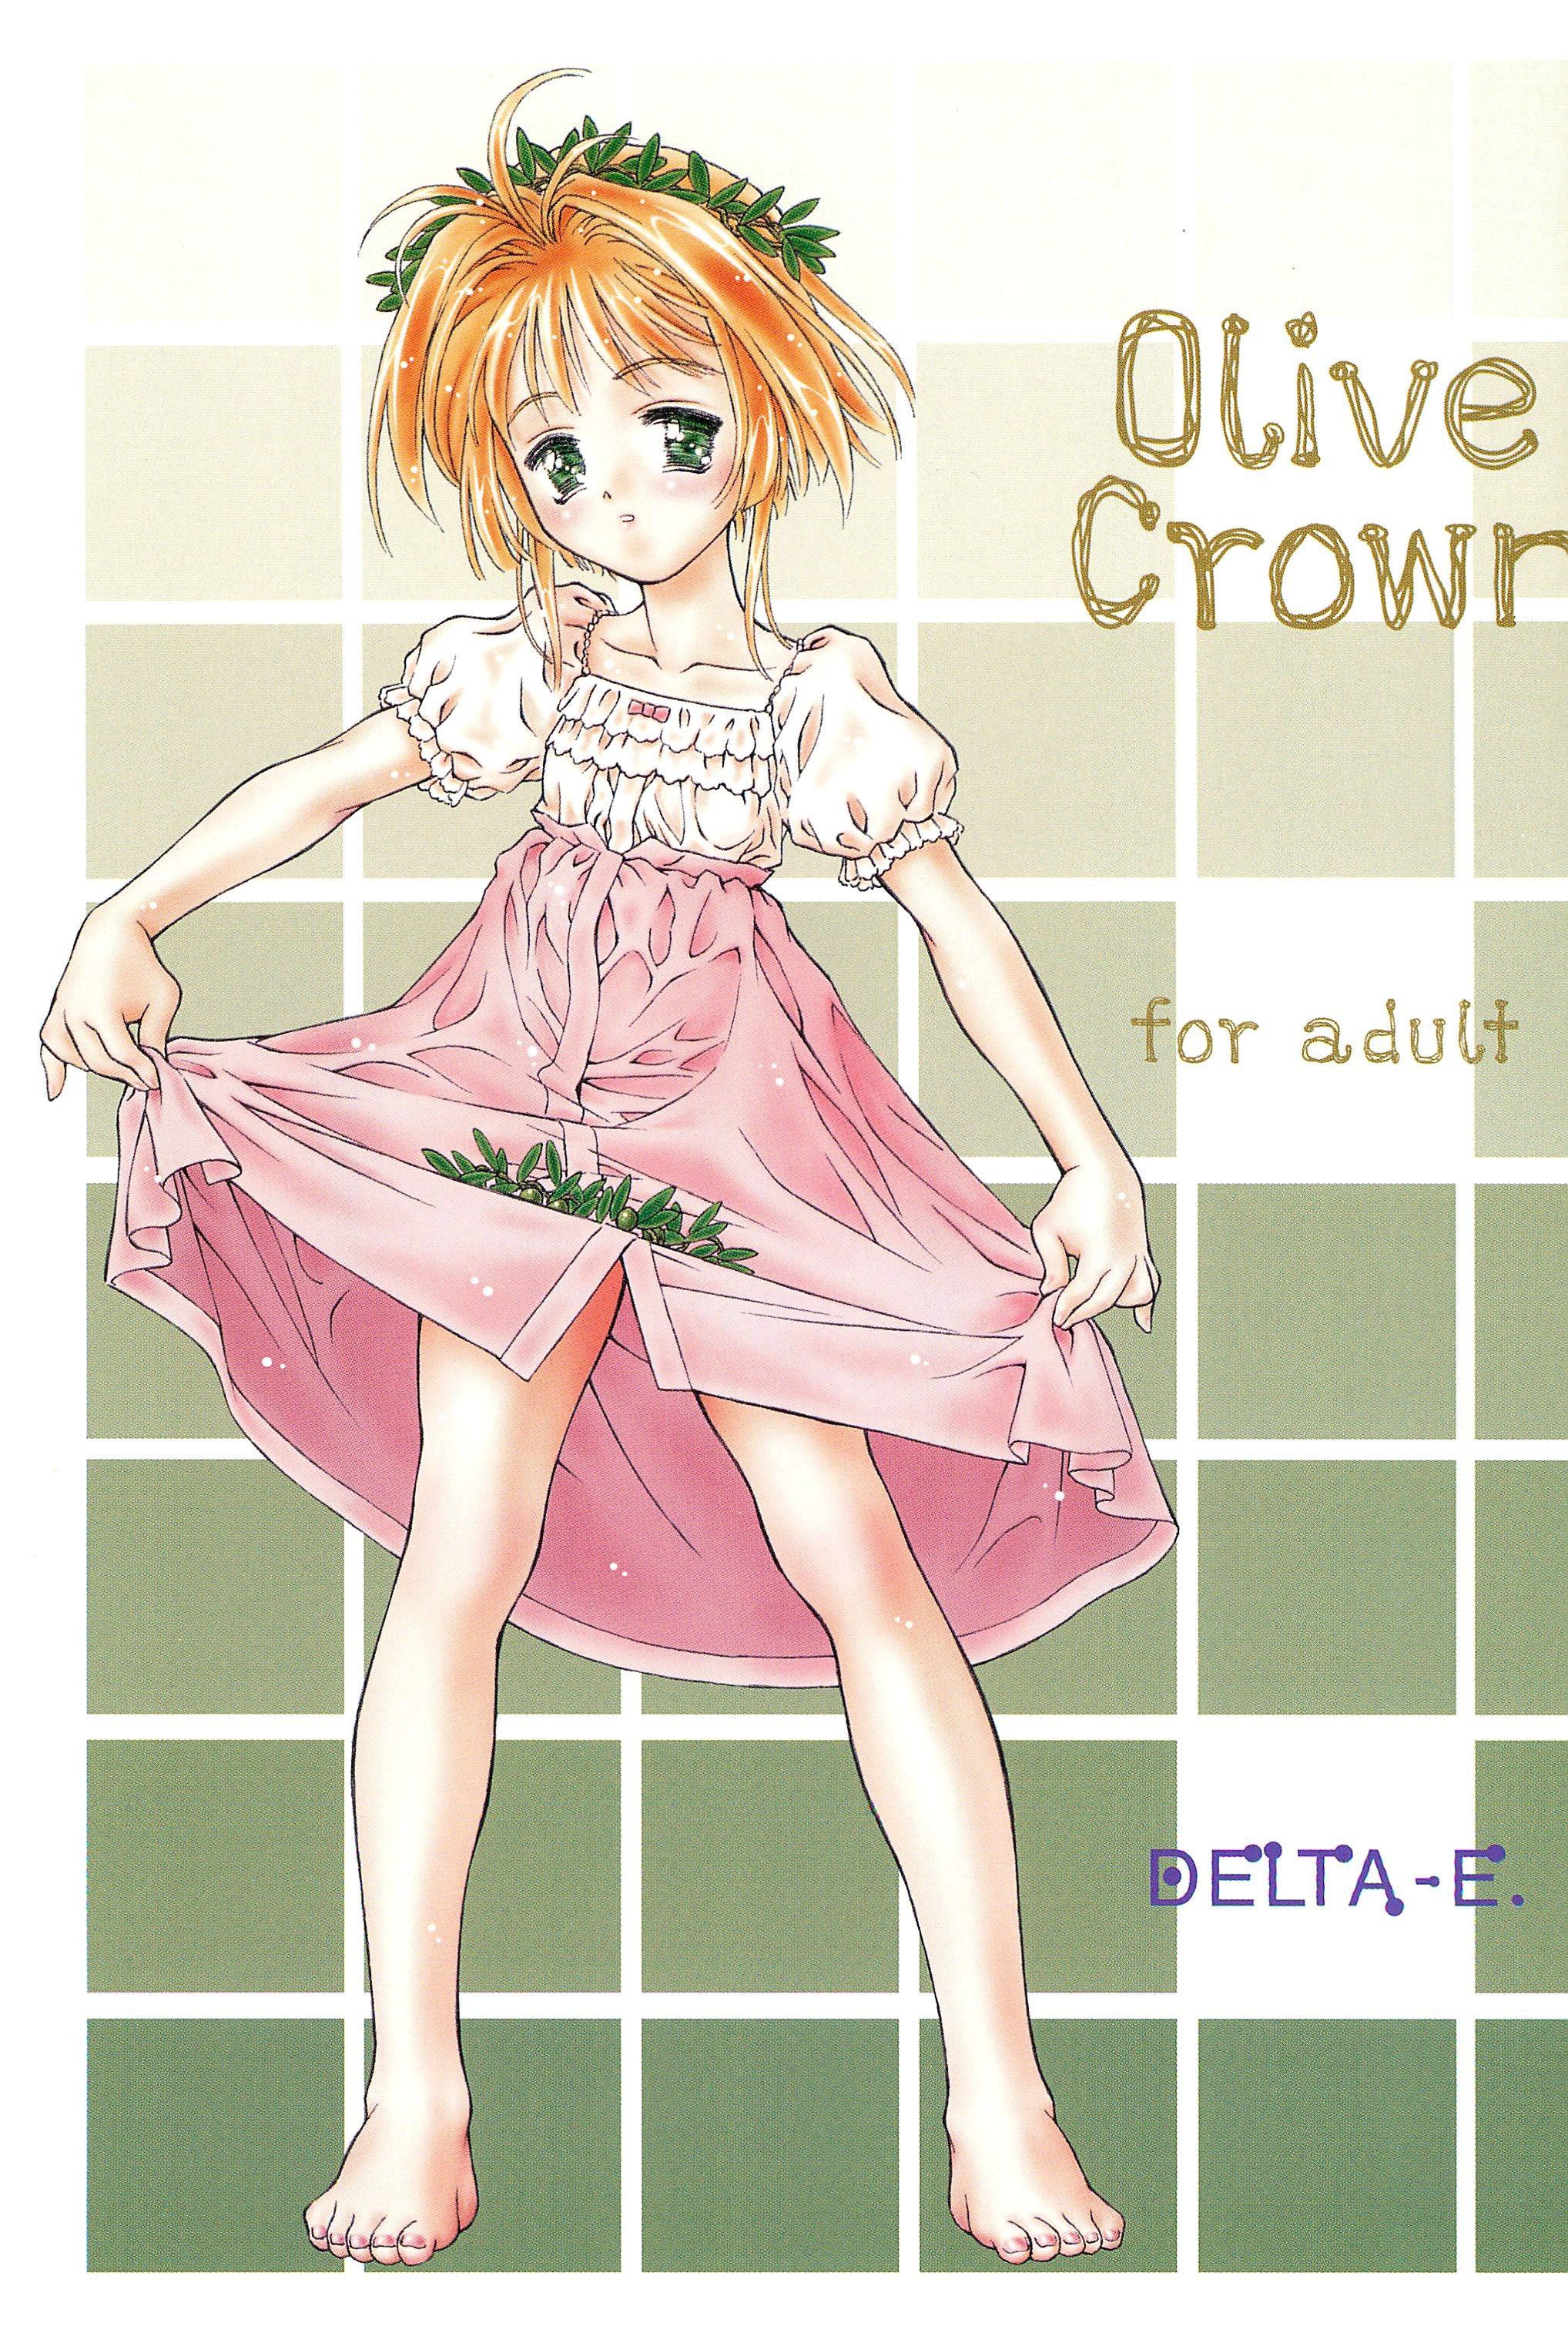 Olive Crown 0